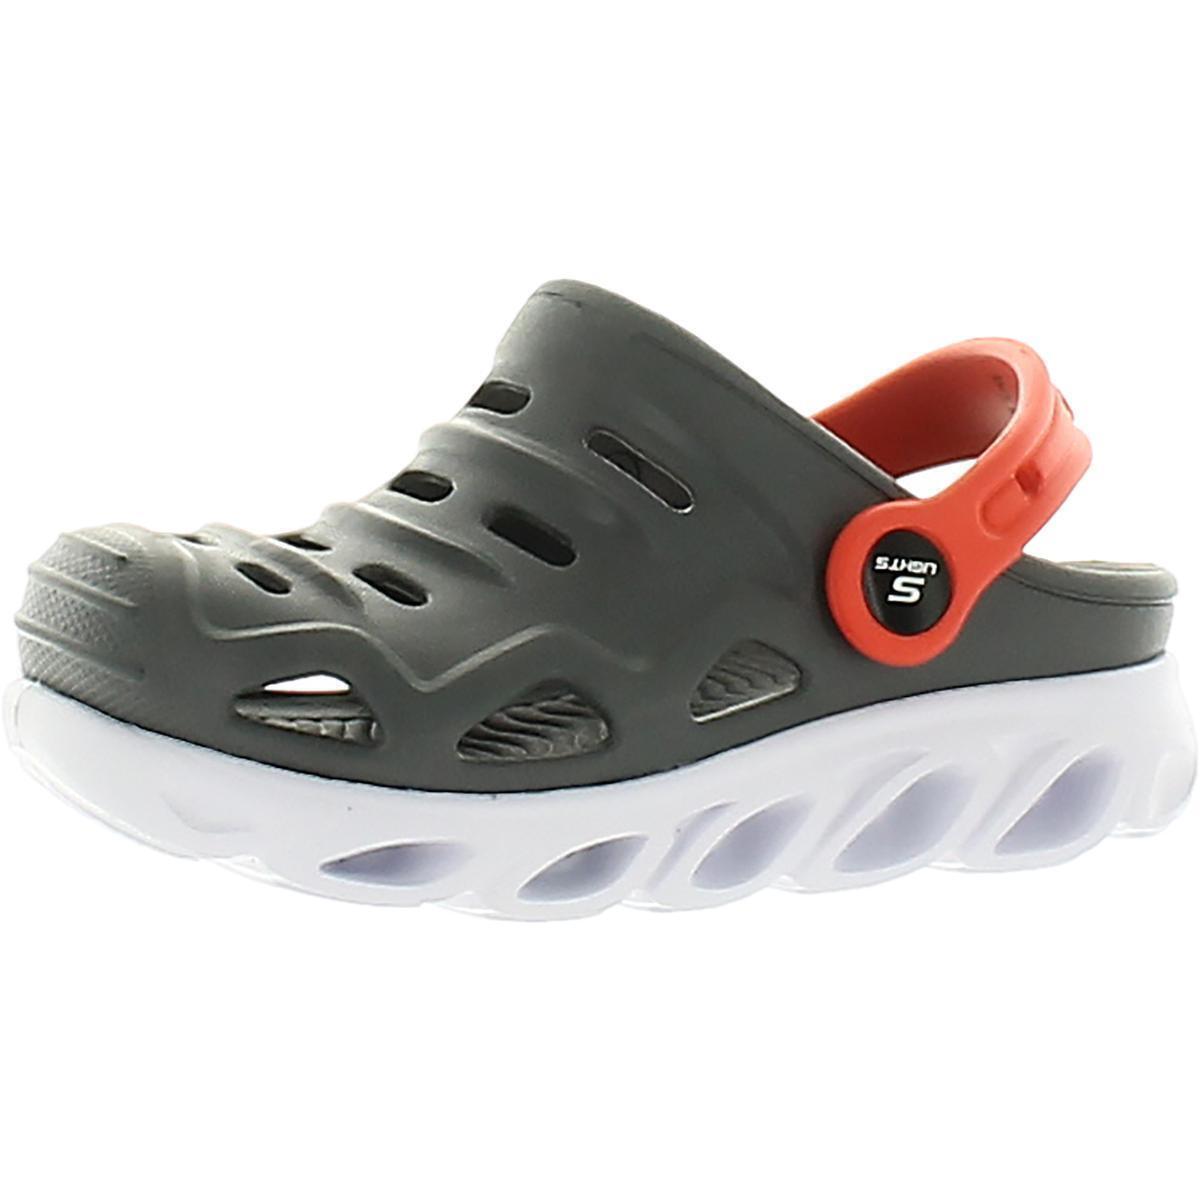 Skechers Razder Rubber Slip On Light-Up Shoes alternate image